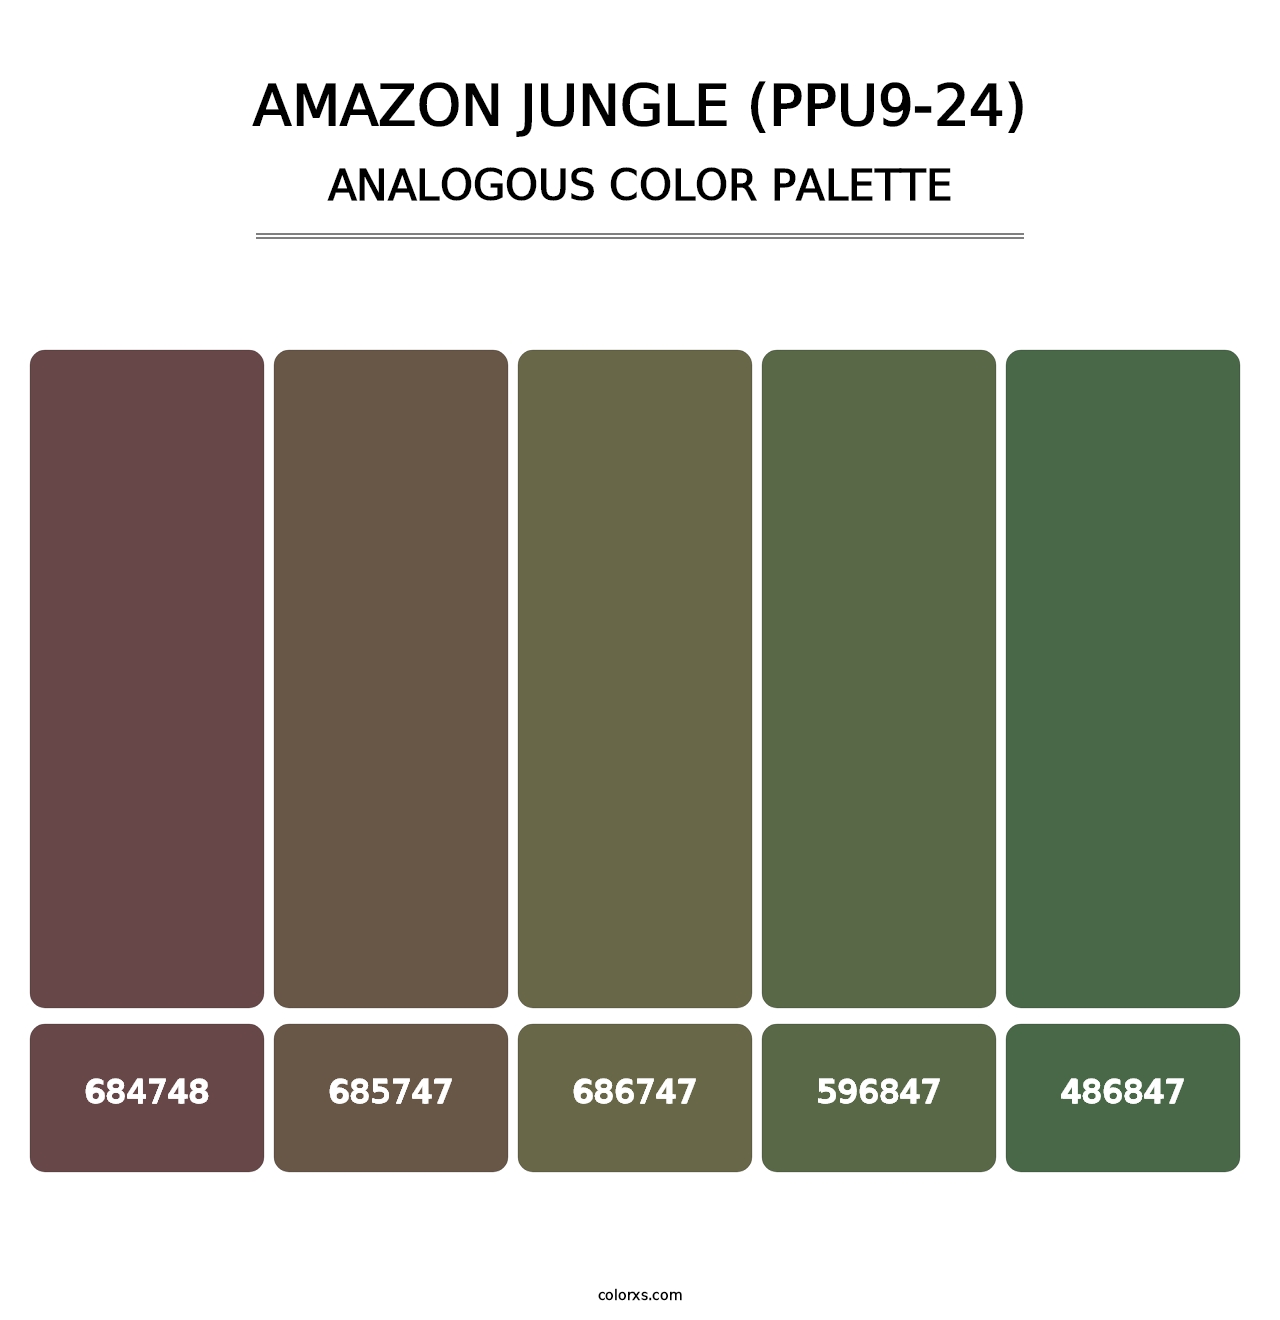 Amazon Jungle (PPU9-24) - Analogous Color Palette